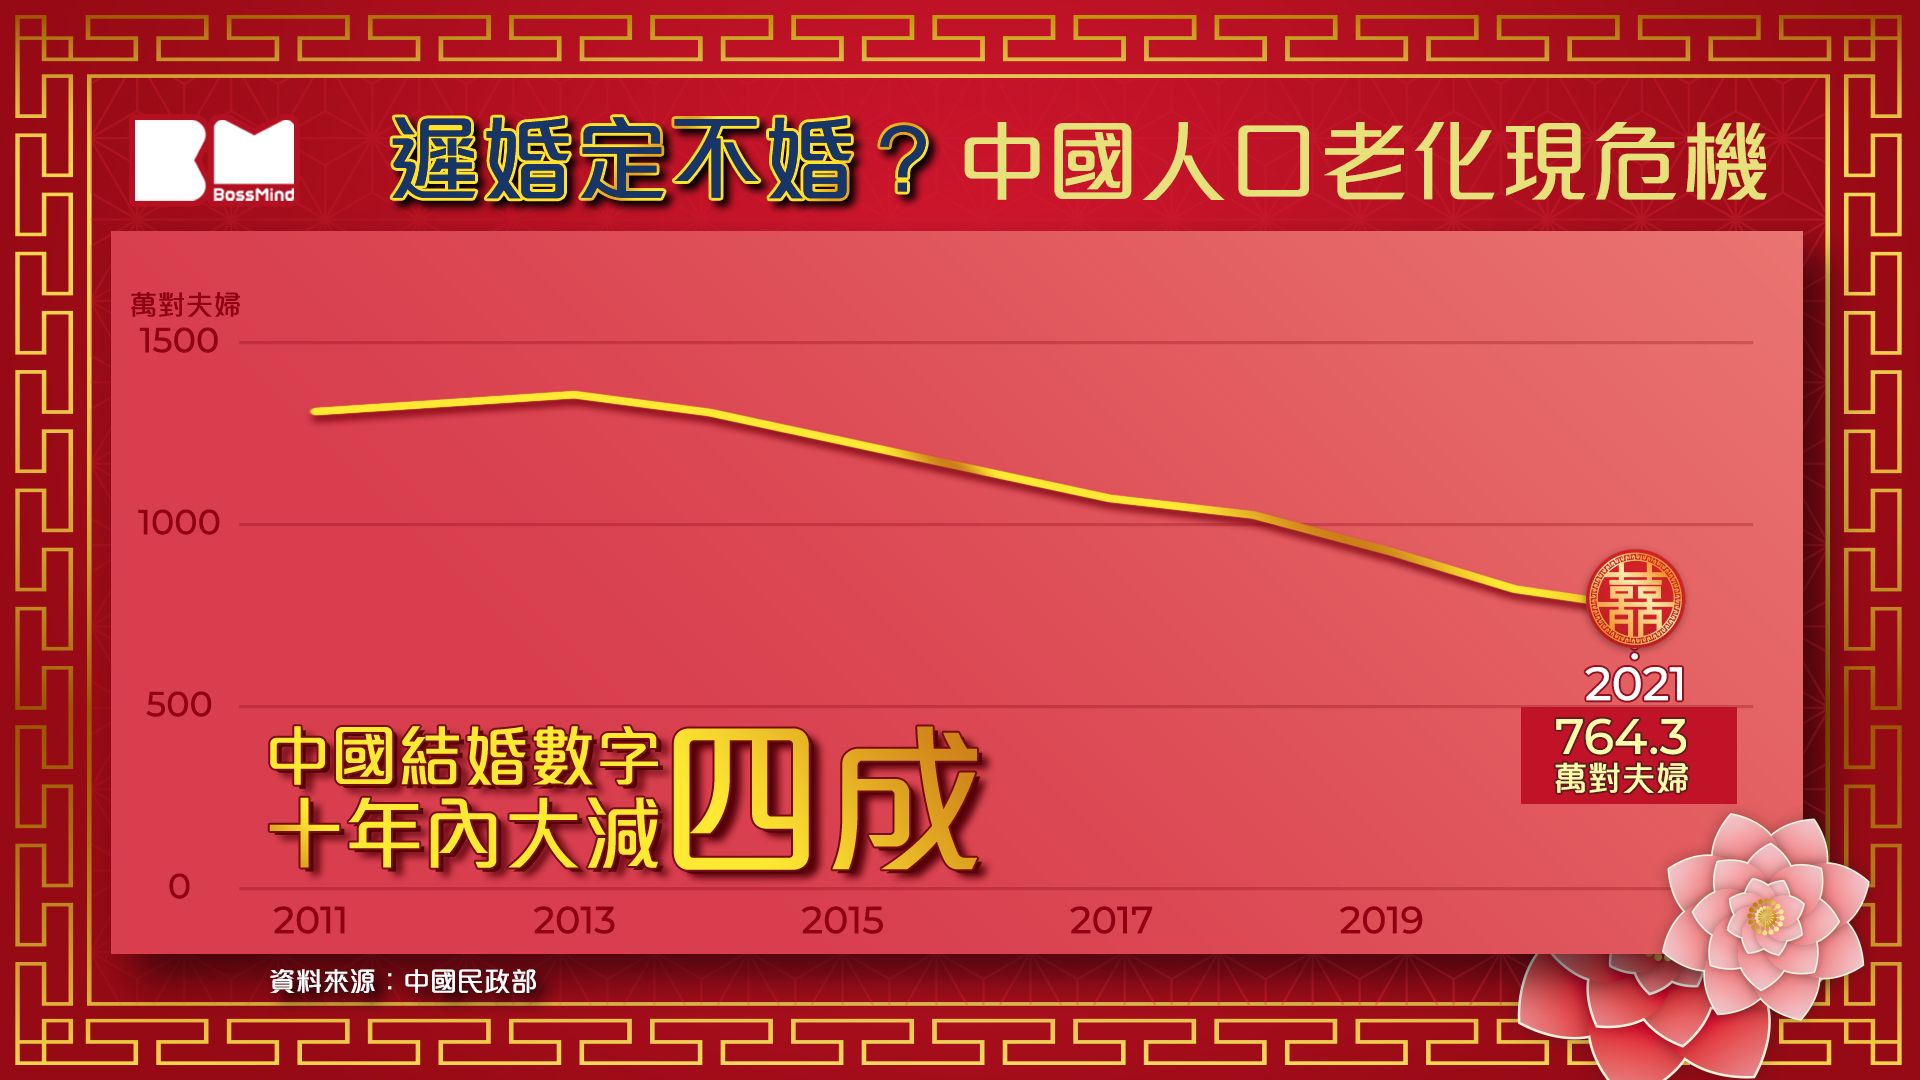 有圖有偈傾｜中國晚婚成趨勢 近半人30歲後結婚 中外專家憂人口大減